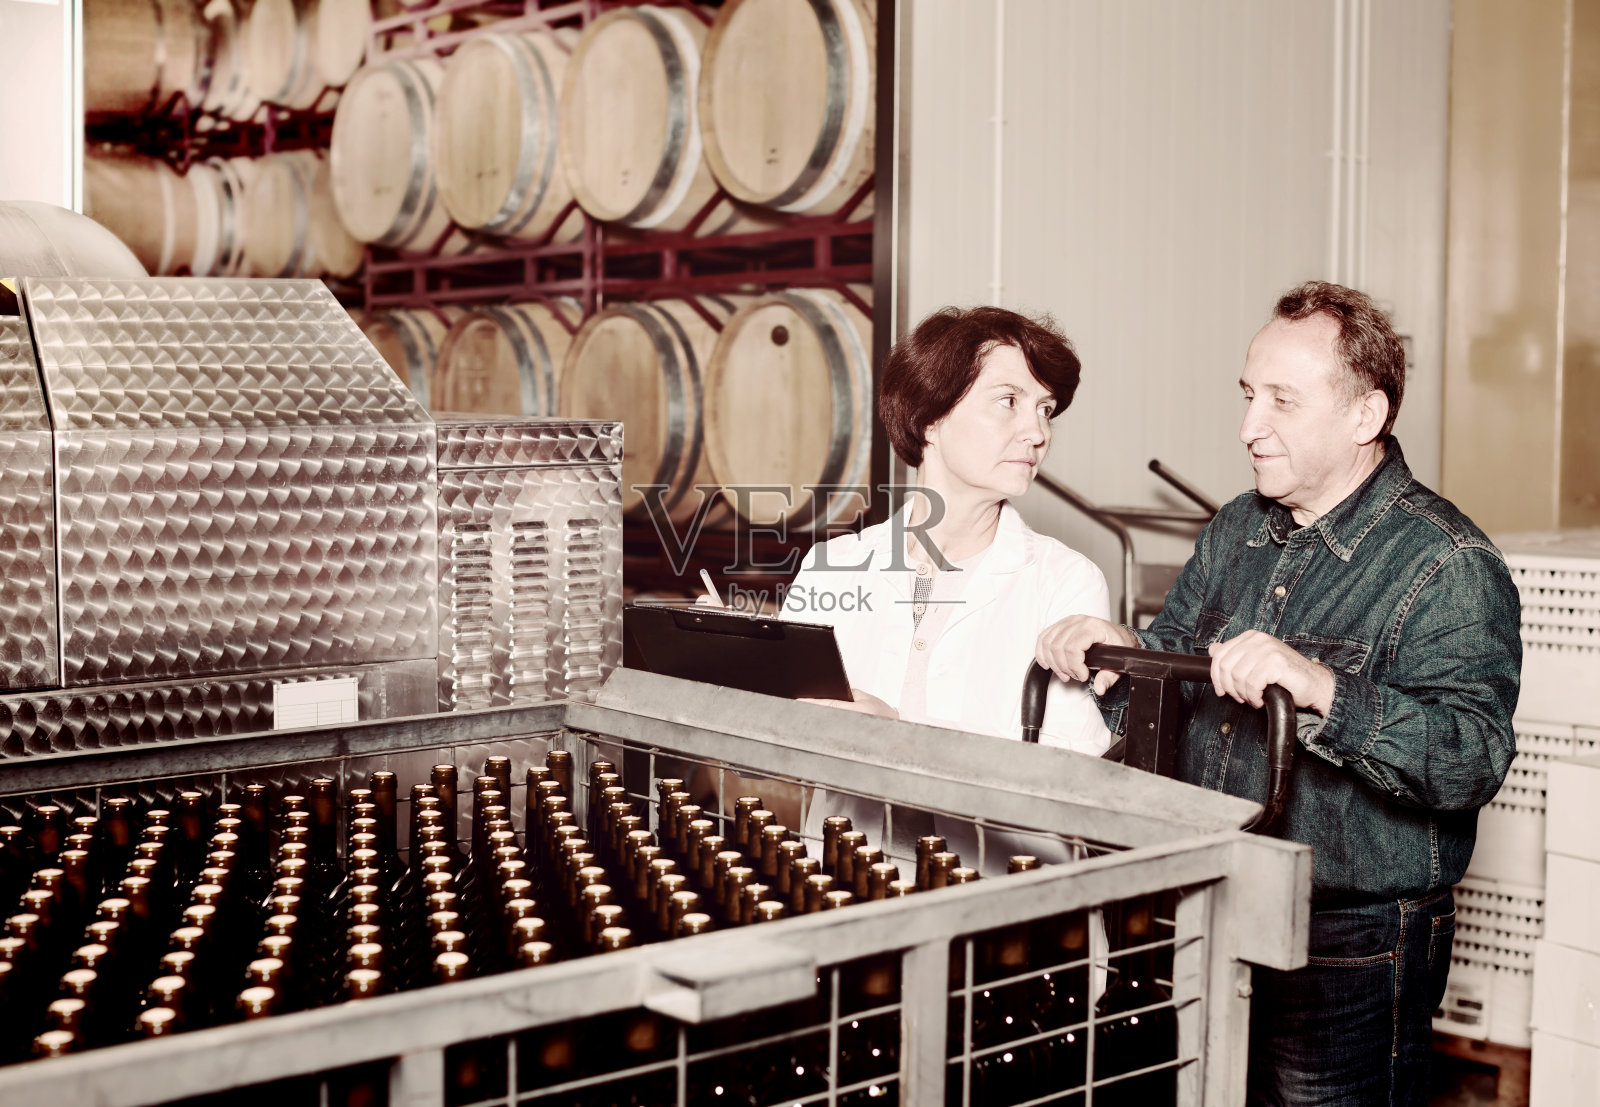 葡萄酒制造商展示与葡萄酒的瓶子照片摄影图片